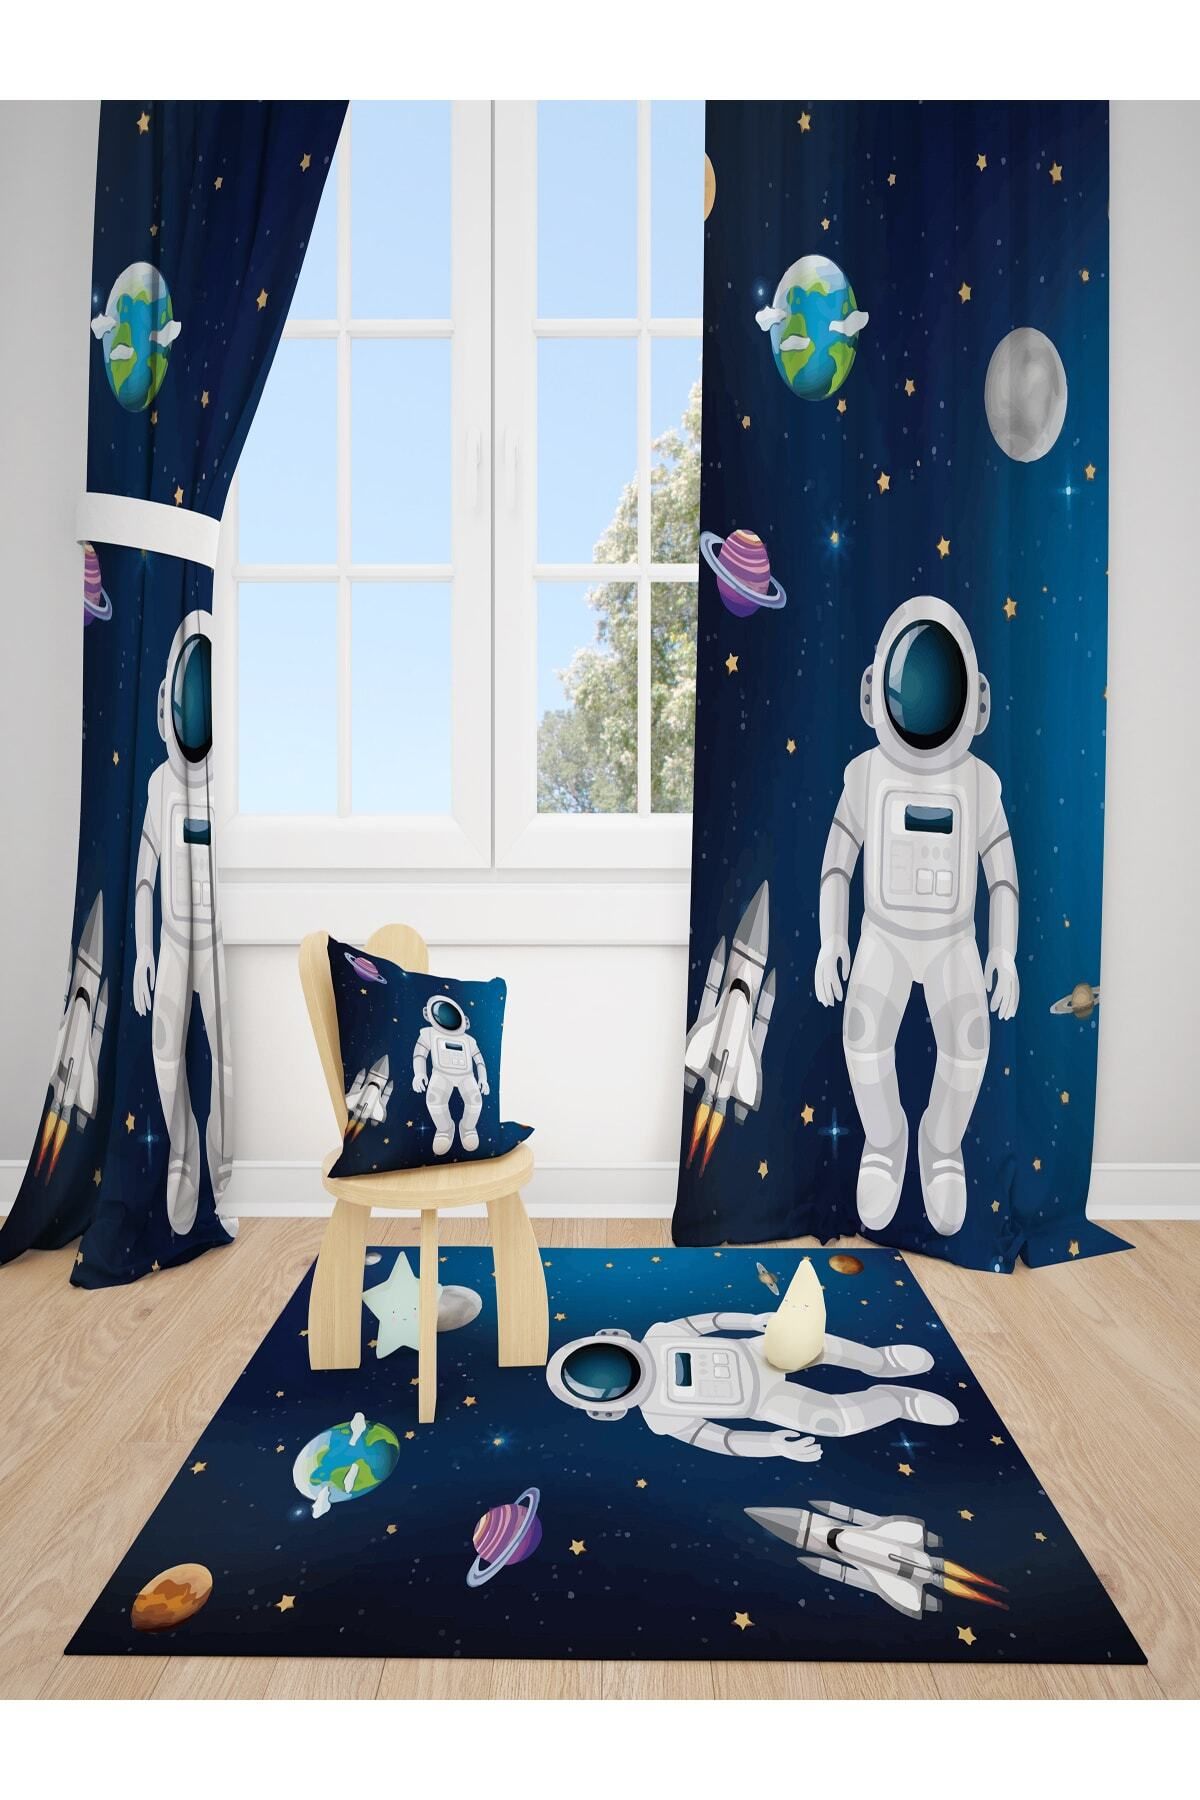 DT KIDS Astronot Gezegen Çocuk Odası 2 Kanat Fon Perde